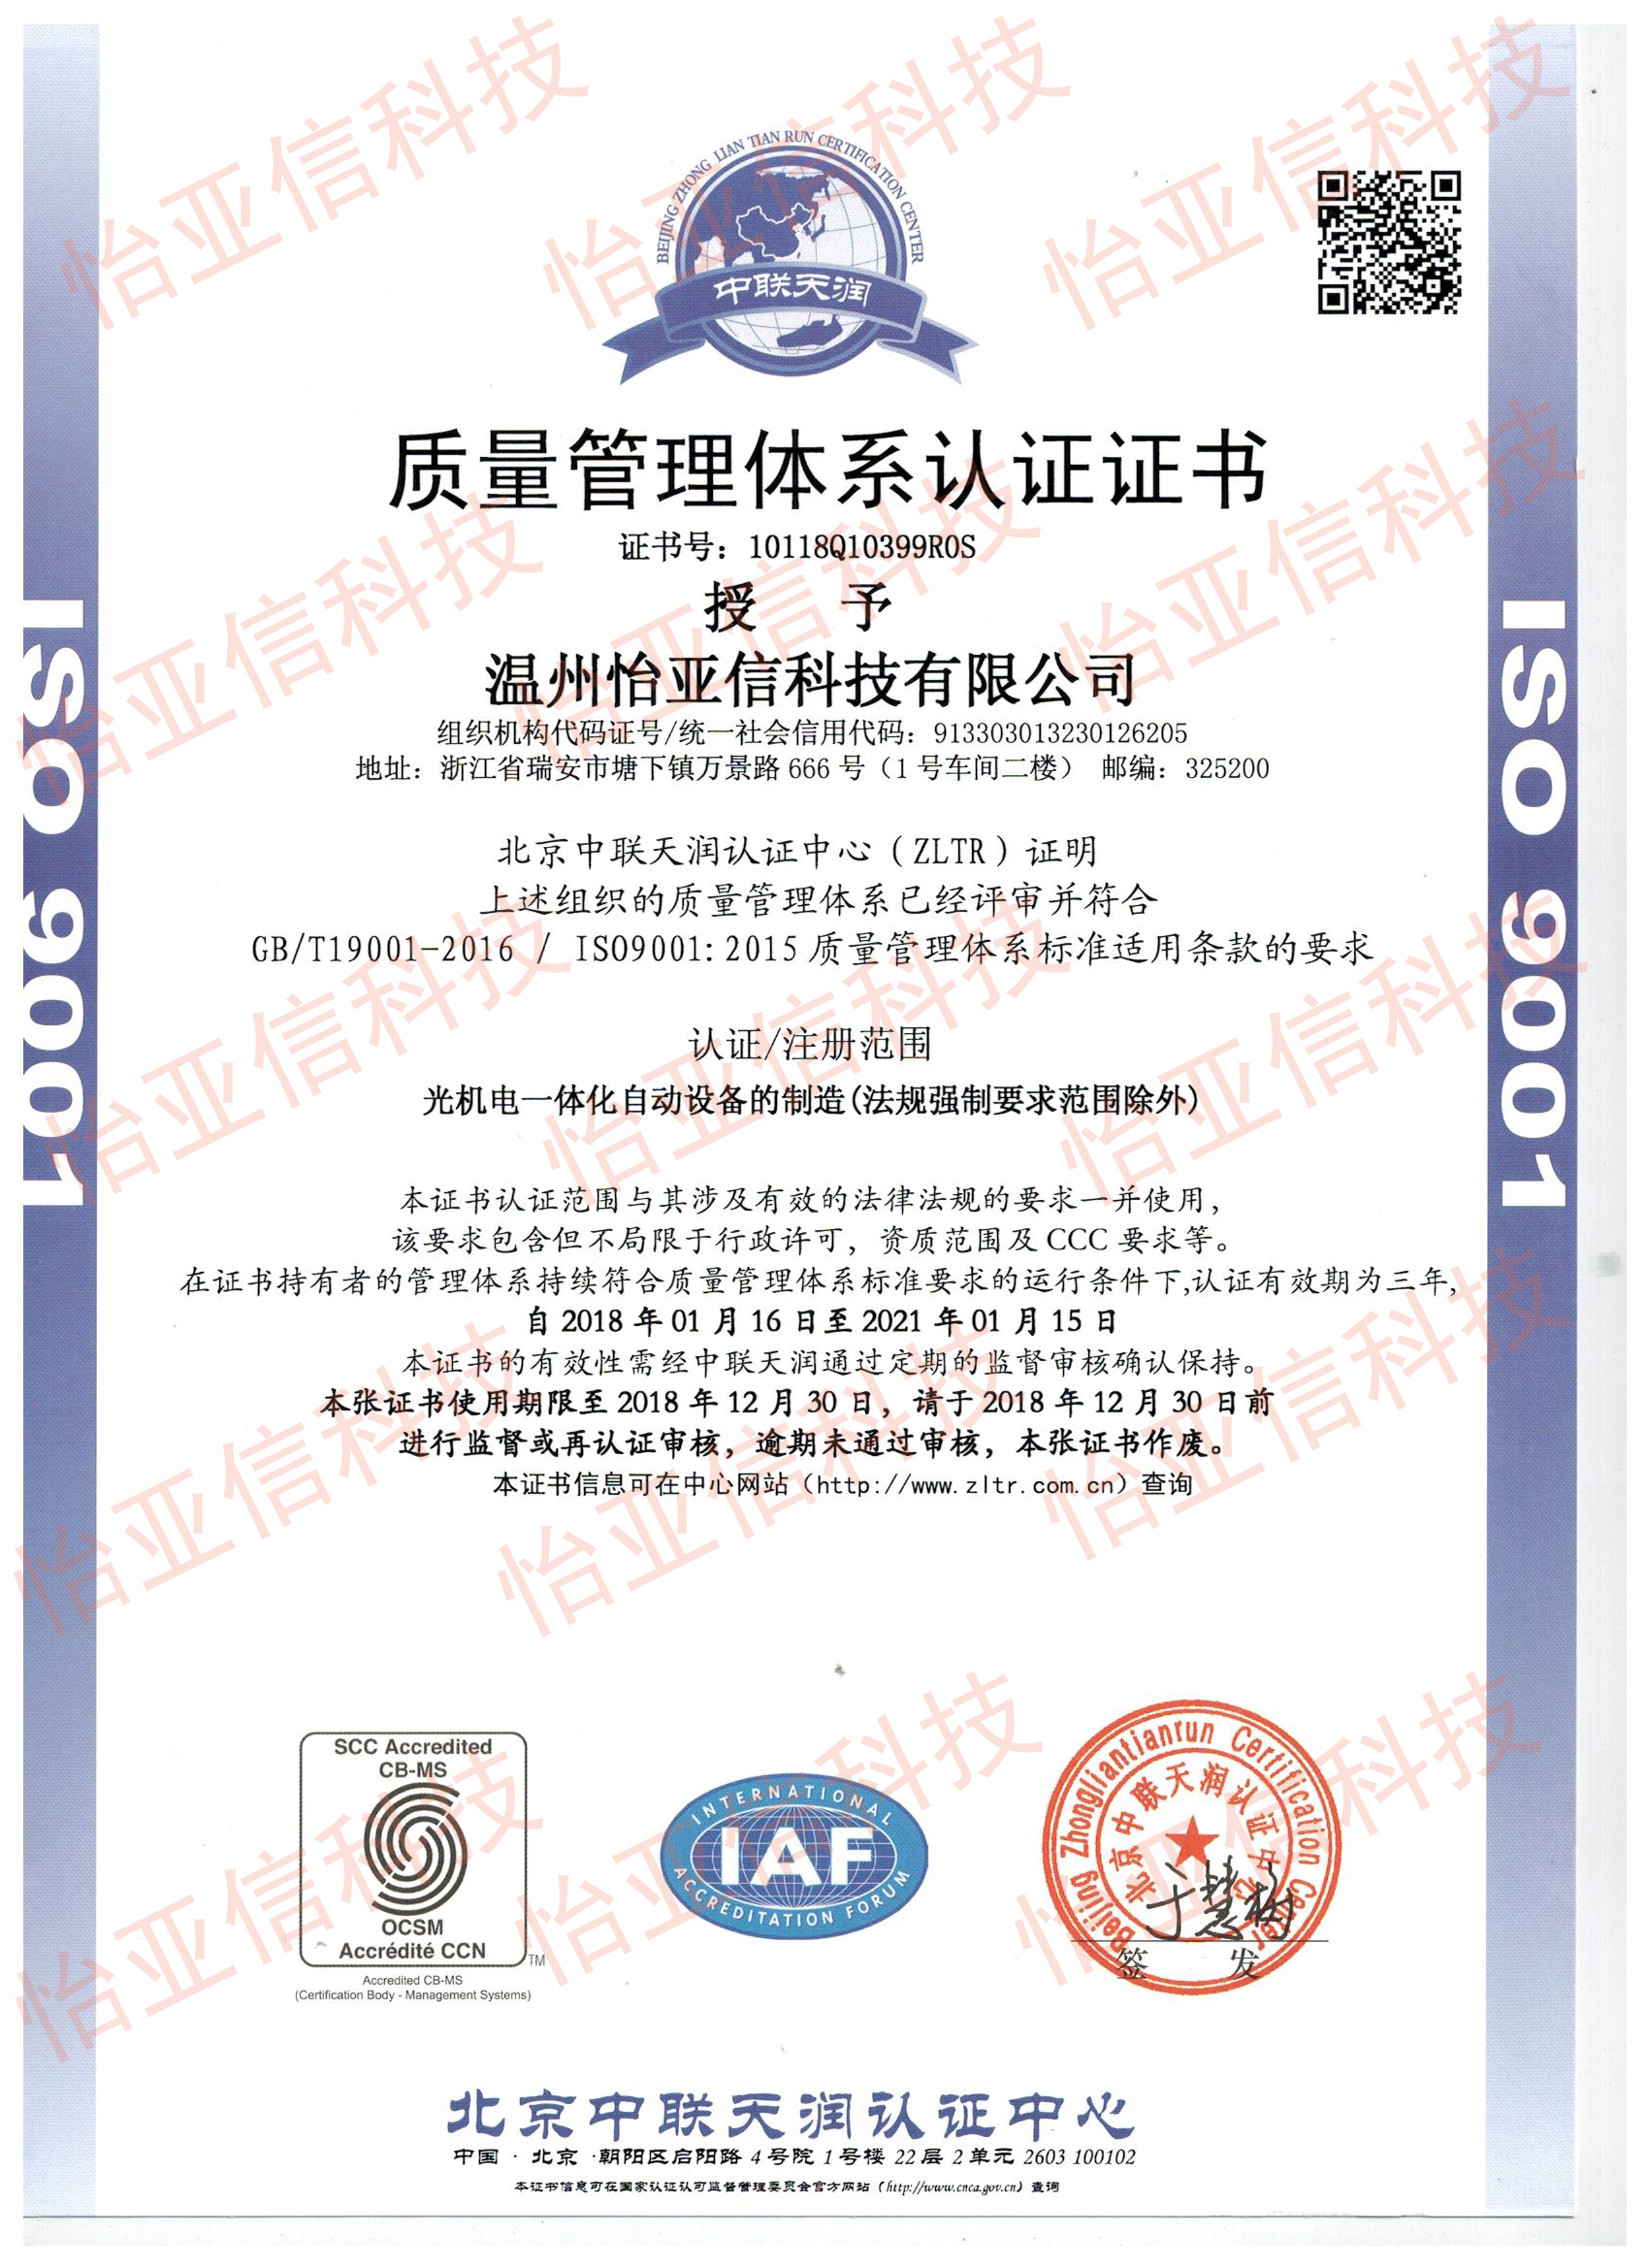 热烈祝贺怡亚信新厂房通过ISO9001质量管理体系认证